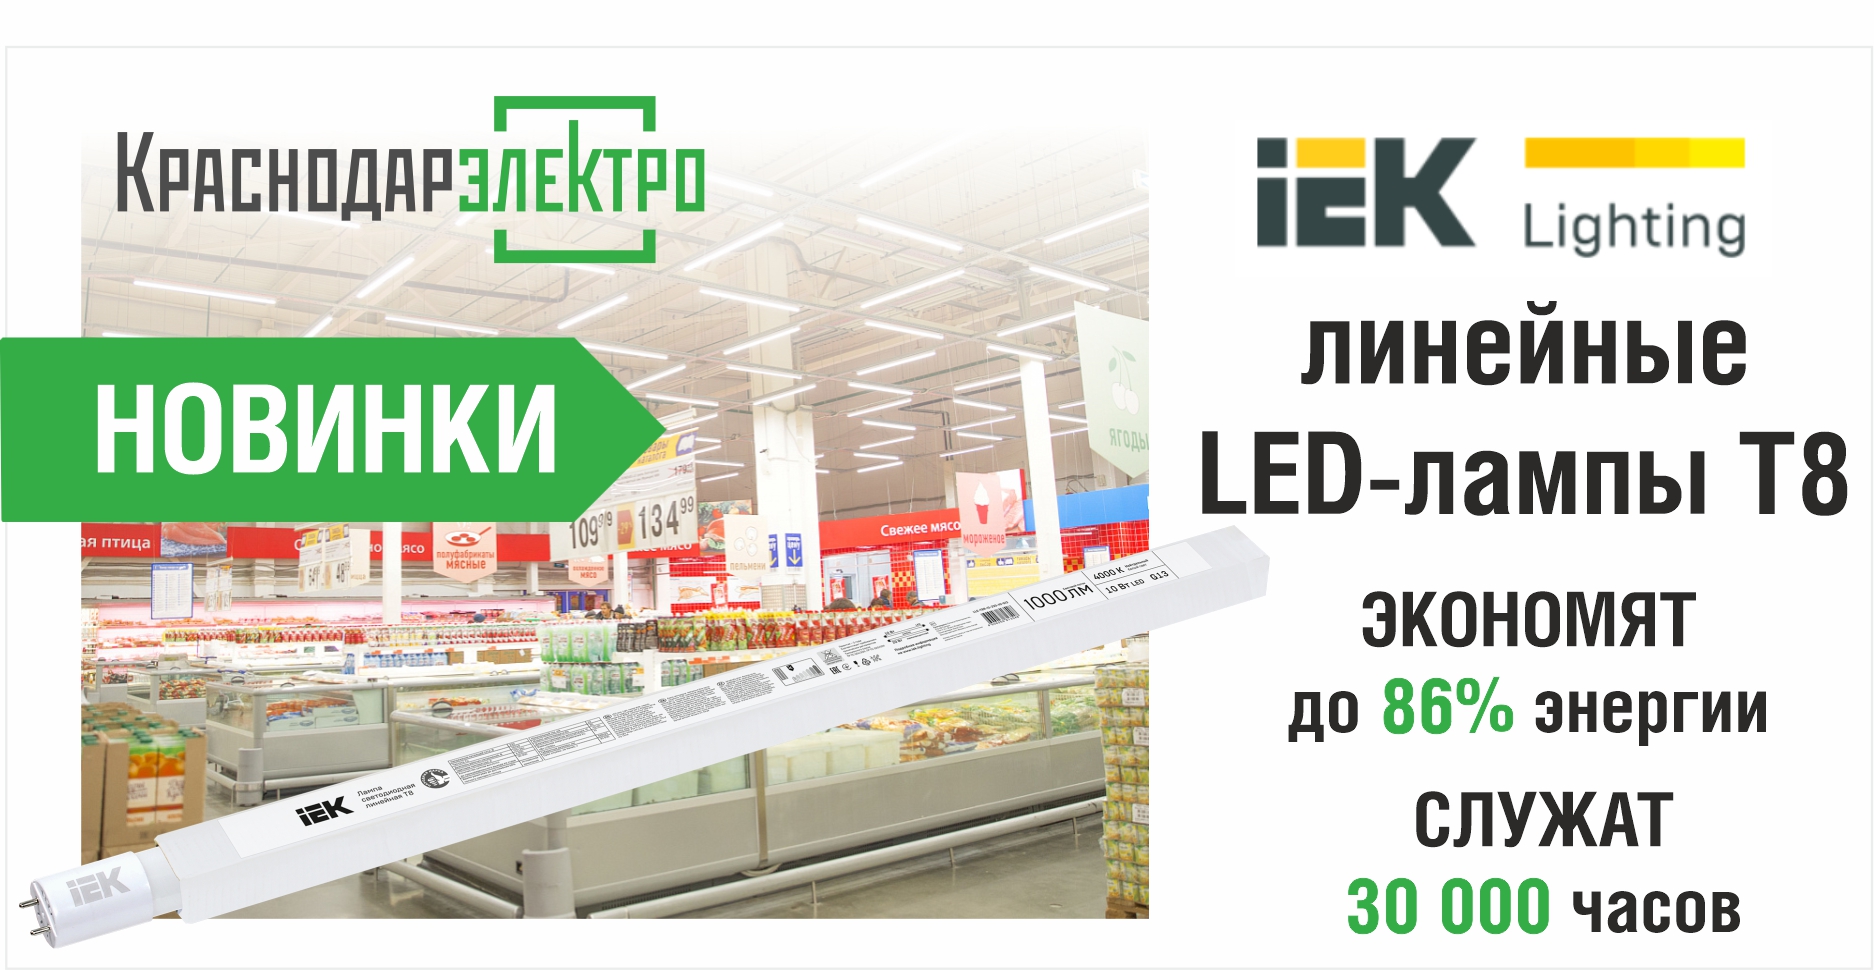 Новинки IEK: линейные LED-лампы T8